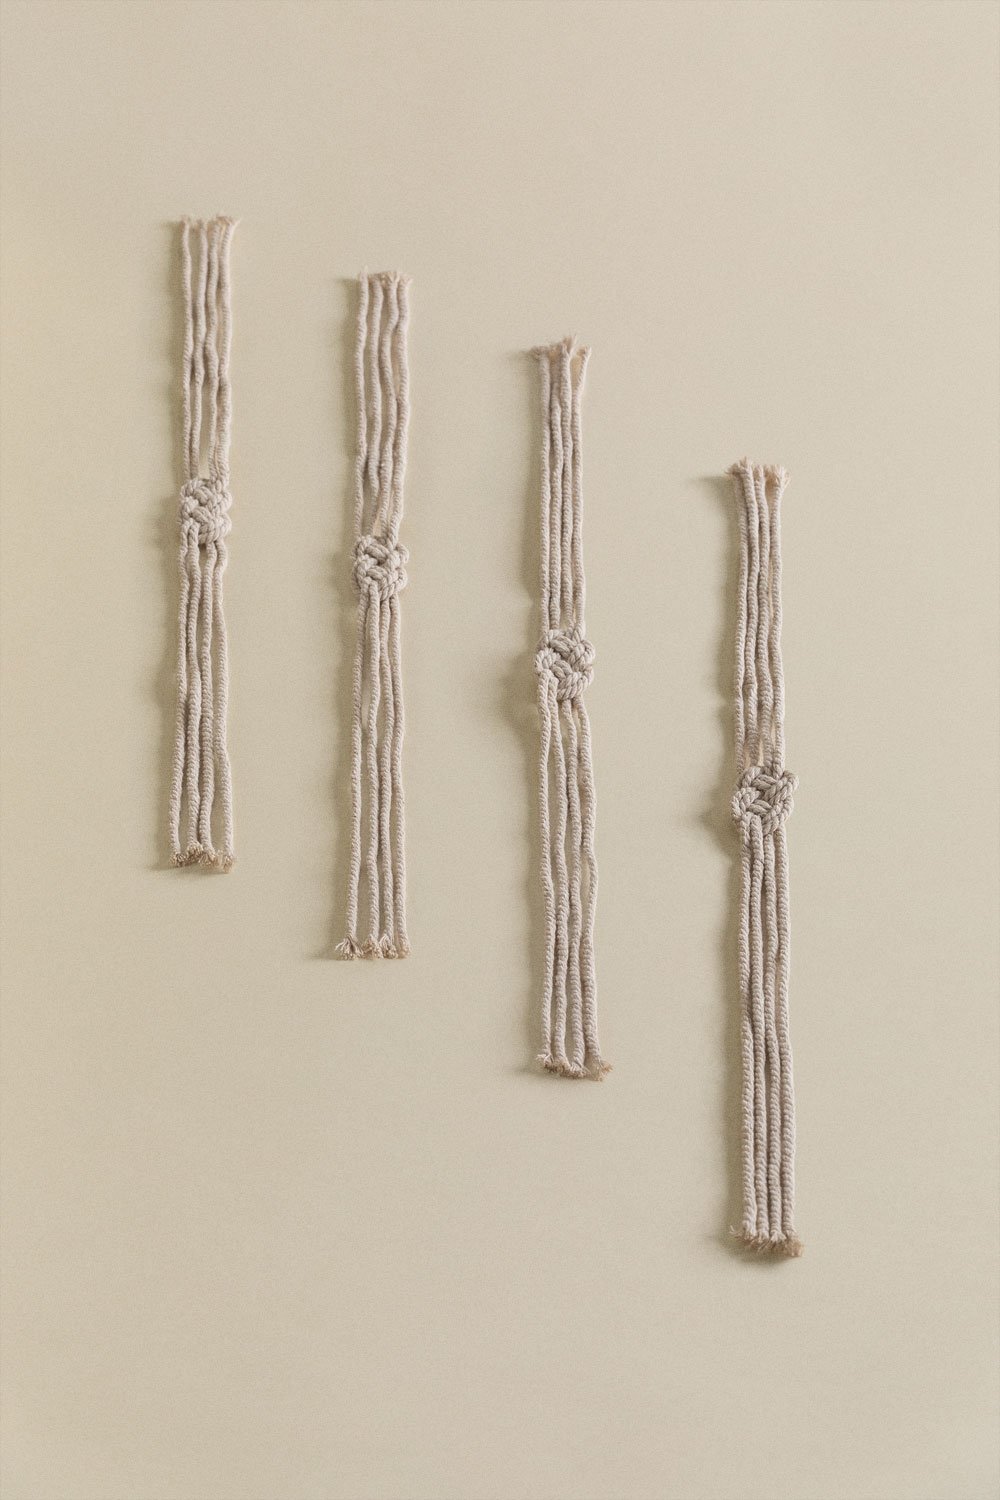 Set de 4 Ronds de Serviette en Macramé Nagur, image de la galerie 1